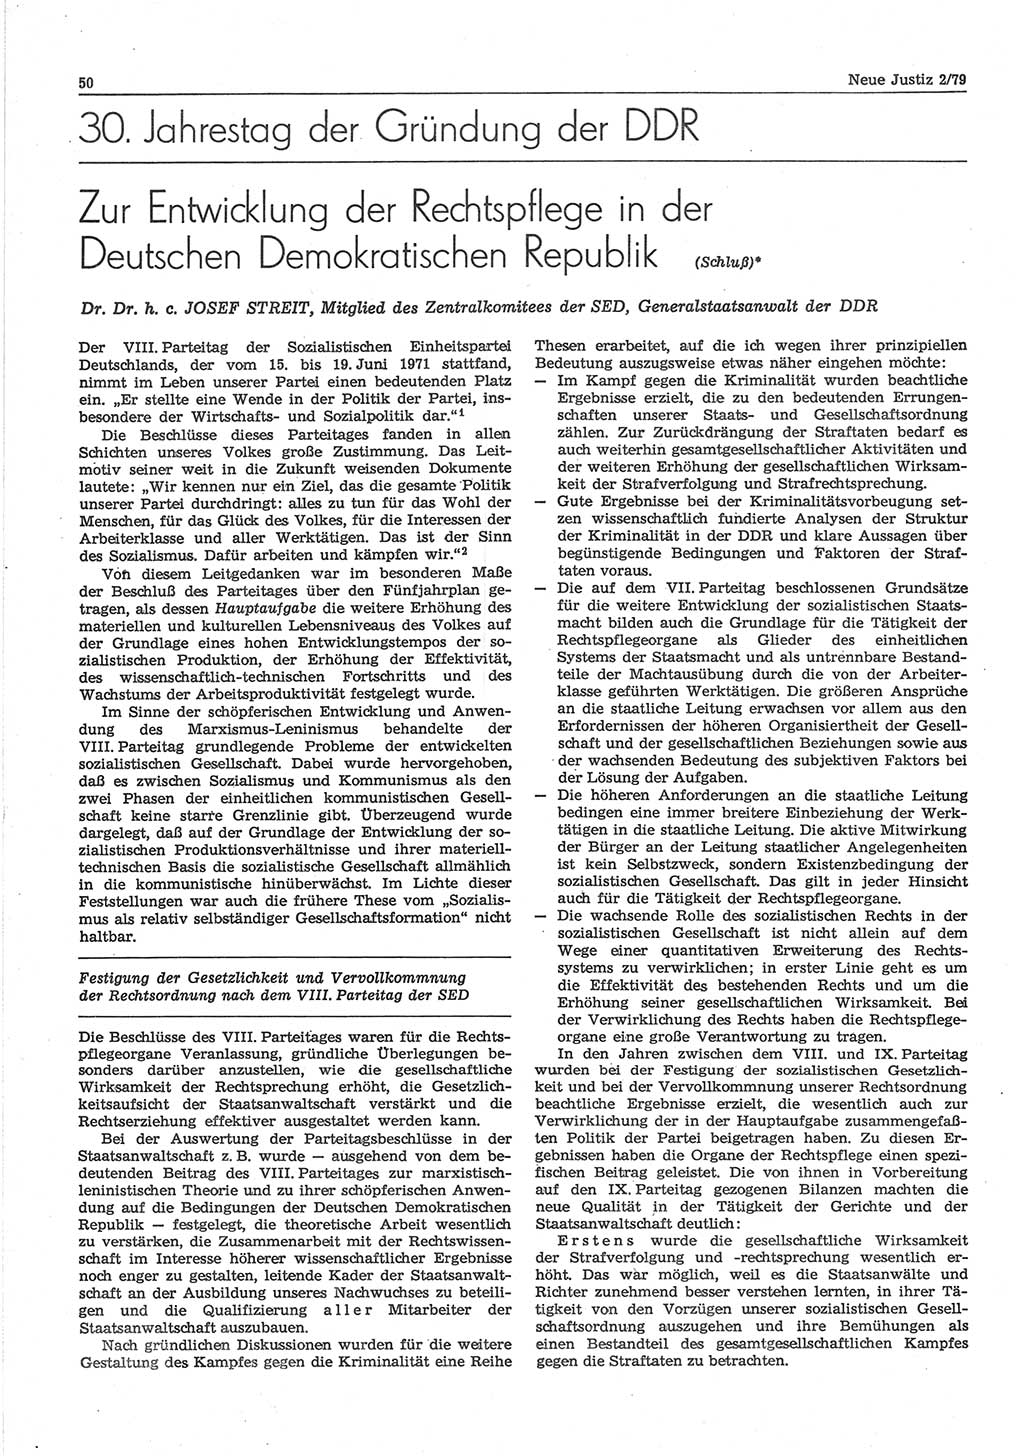 Neue Justiz (NJ), Zeitschrift für sozialistisches Recht und Gesetzlichkeit [Deutsche Demokratische Republik (DDR)], 33. Jahrgang 1979, Seite 50 (NJ DDR 1979, S. 50)